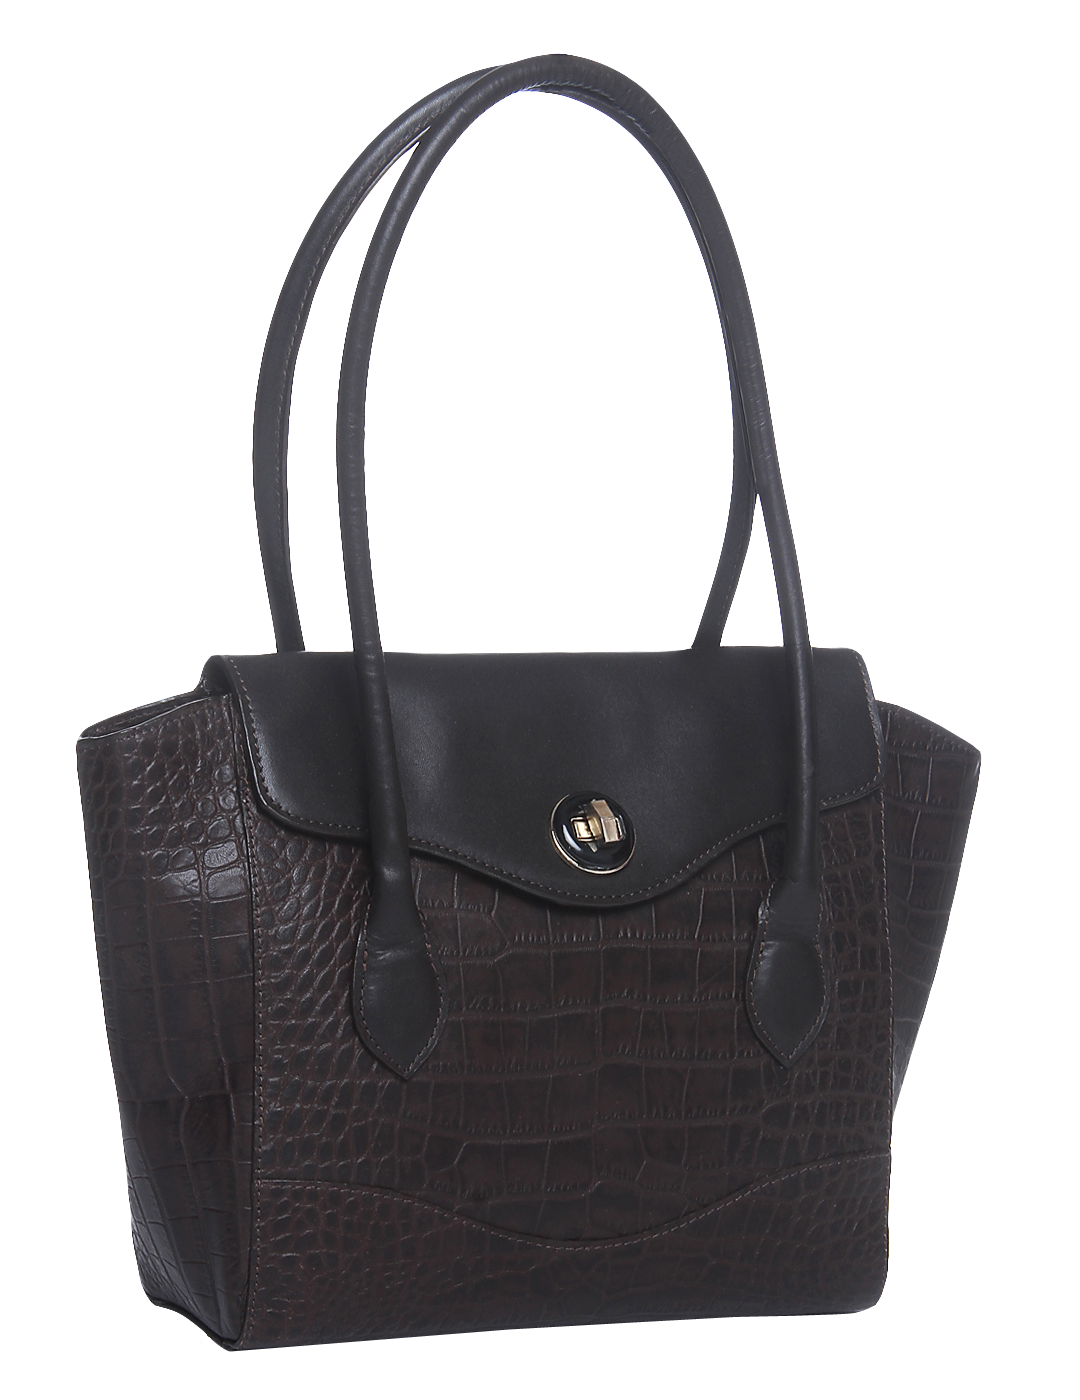 Elegant Black Leather Handbag PNG image